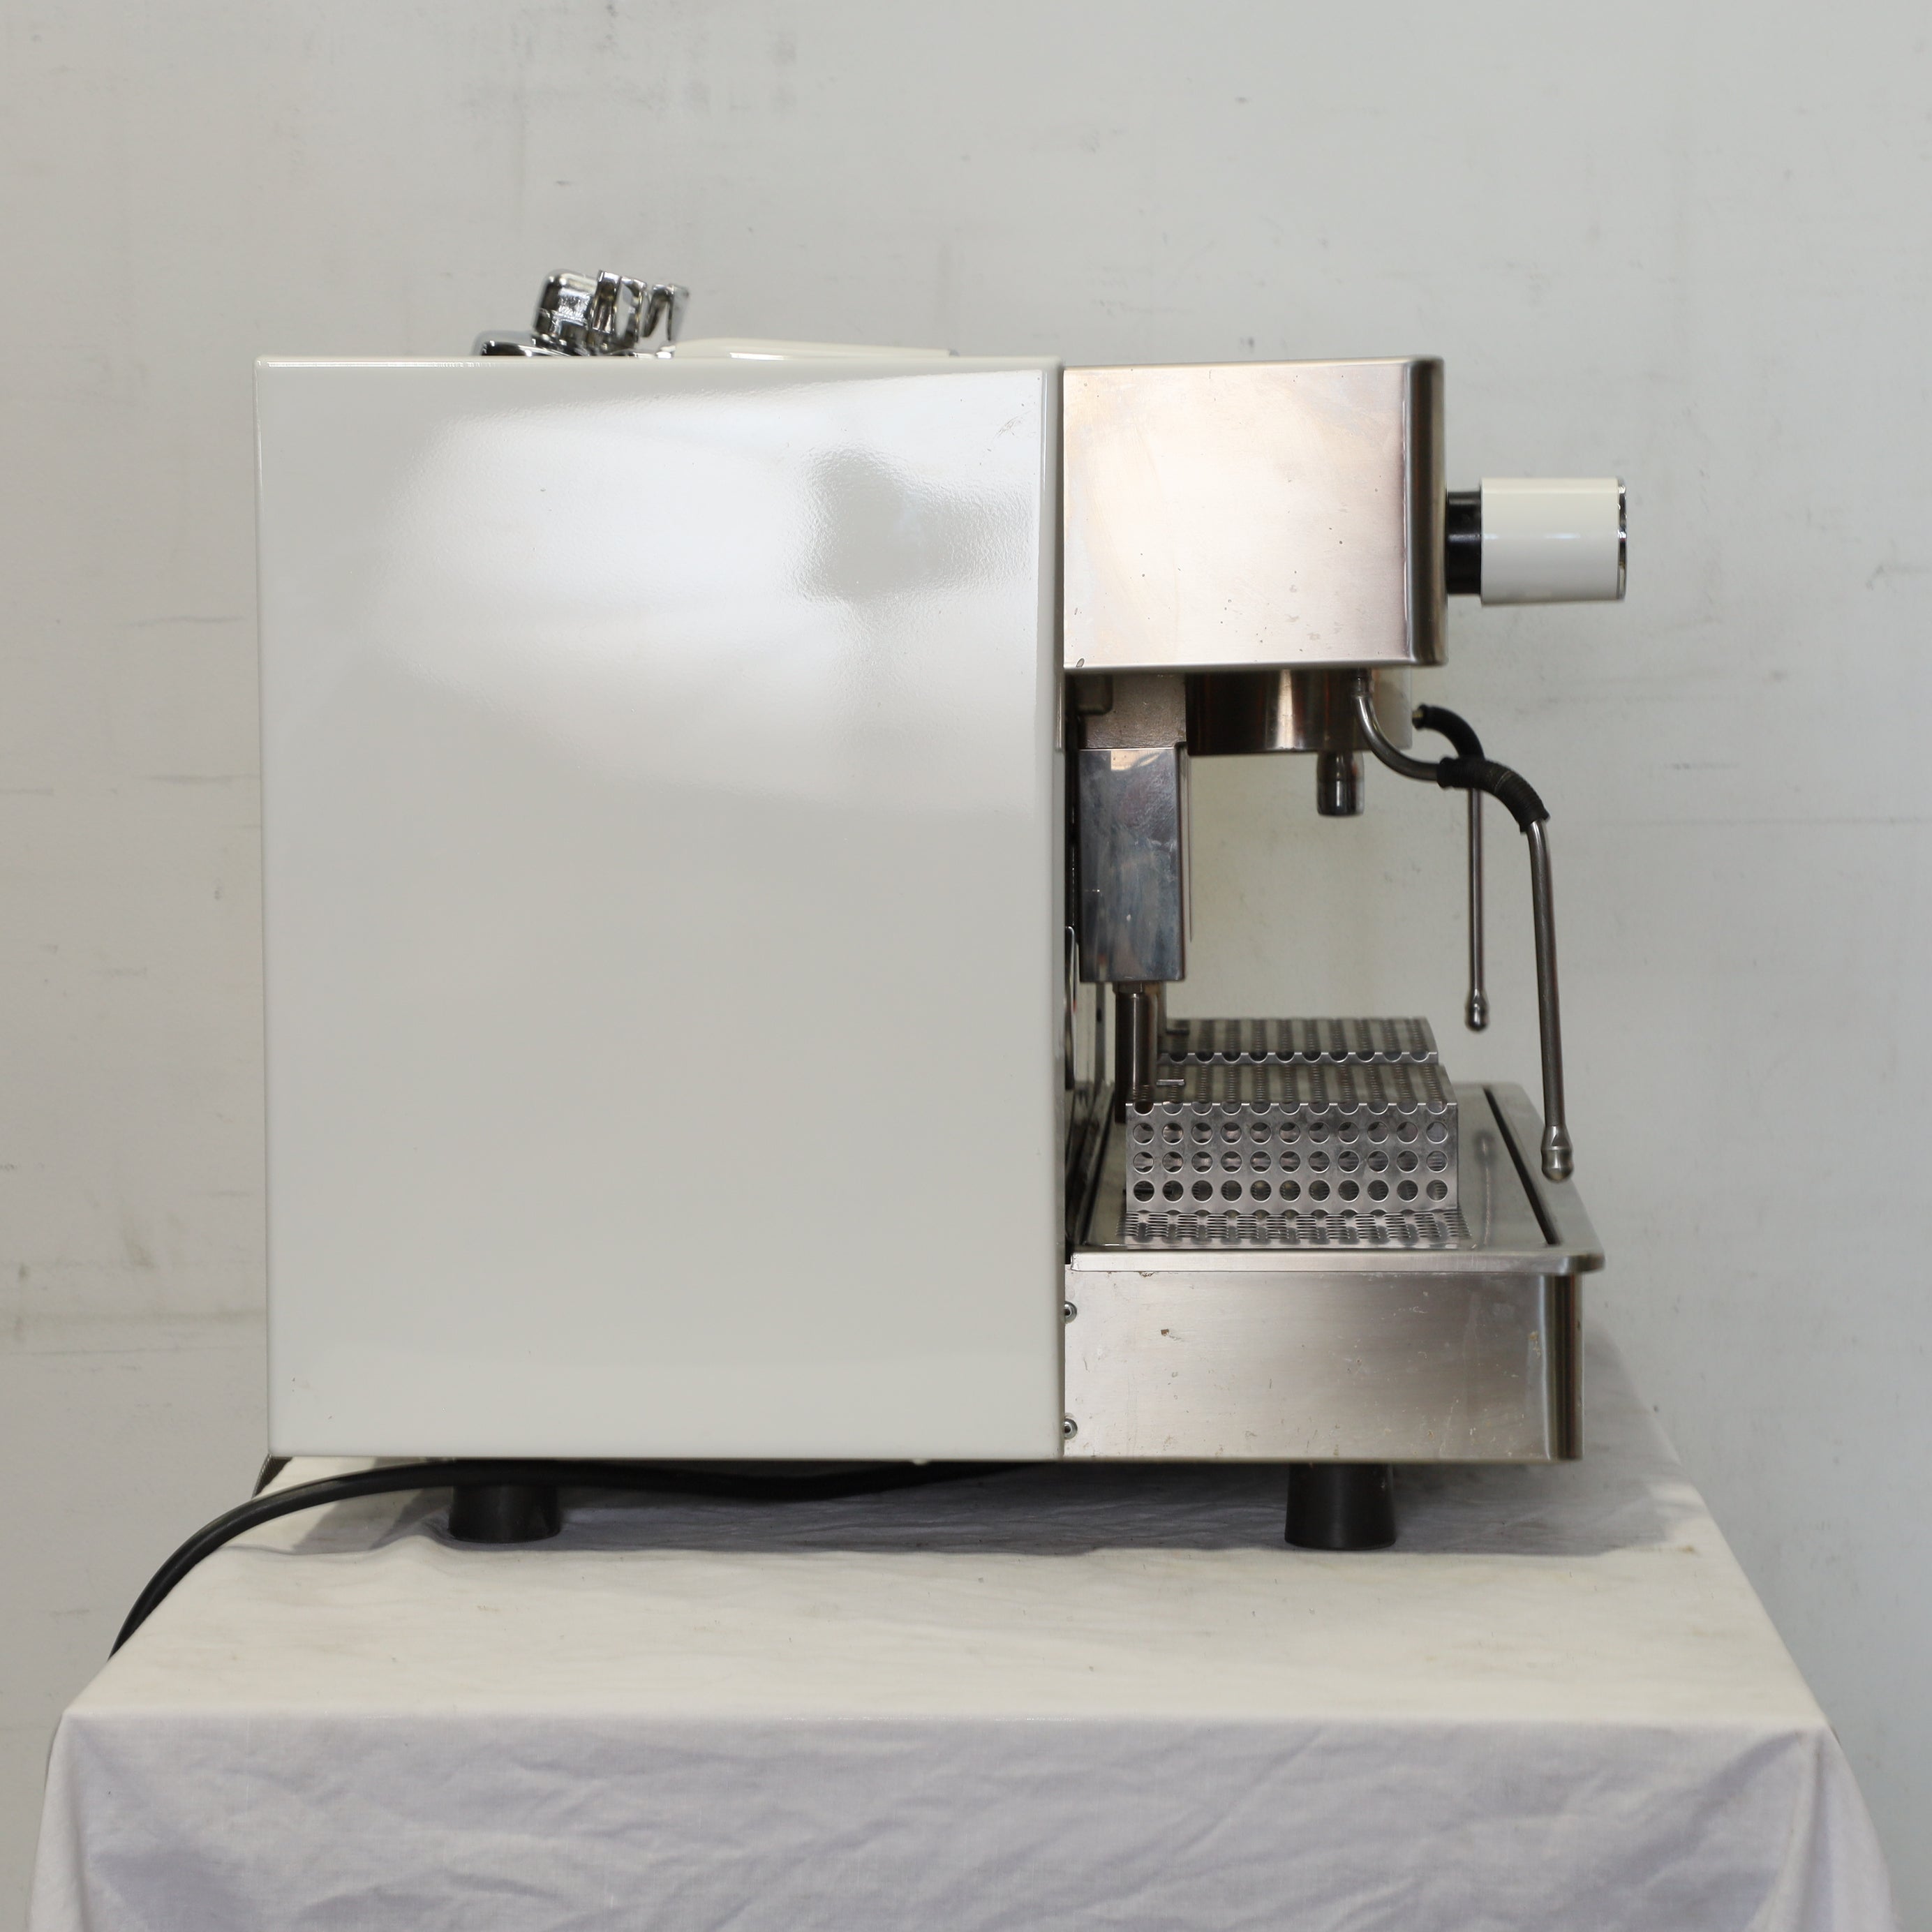 Thumbnail - Saeco Perfetta 2 Group Coffee Machine